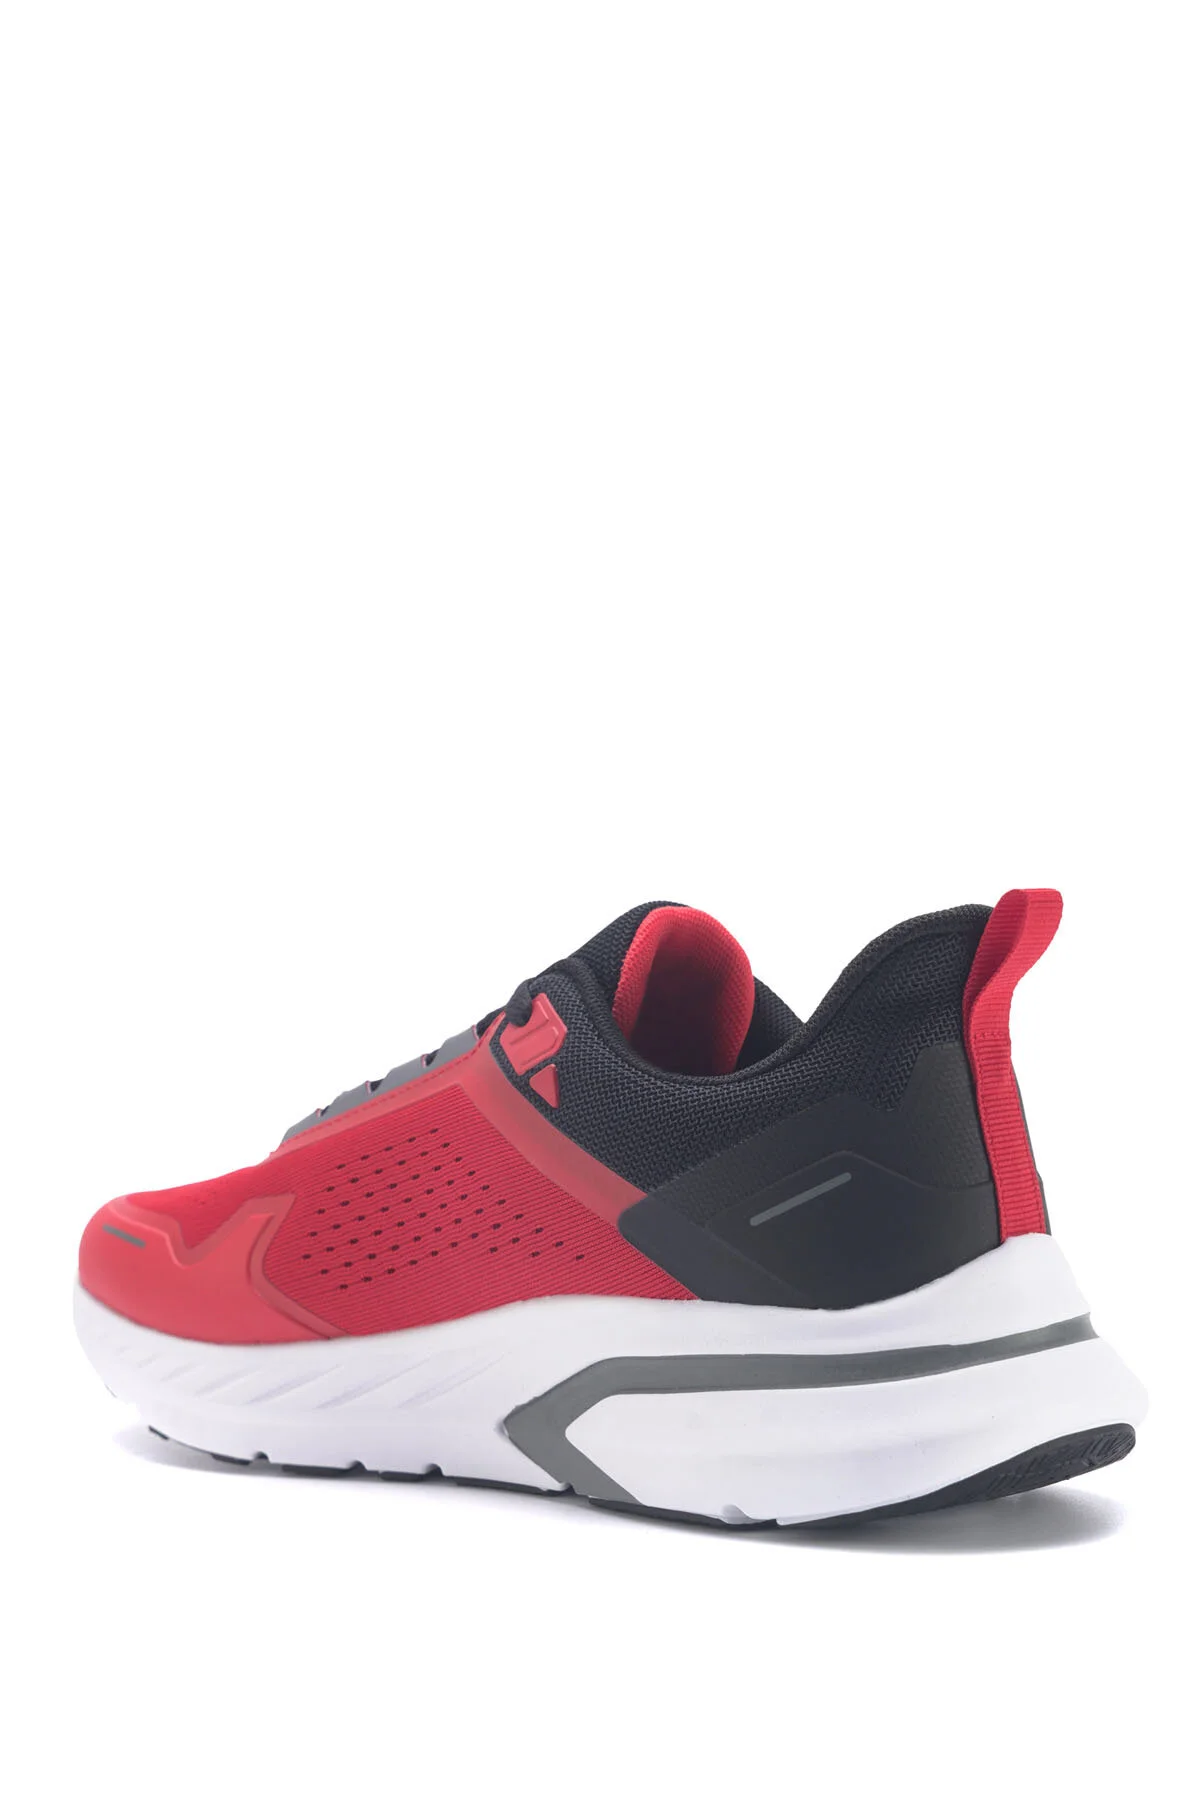 LOVELO 3FX Erkek Koşu Ayakkabısı-Kırmızı